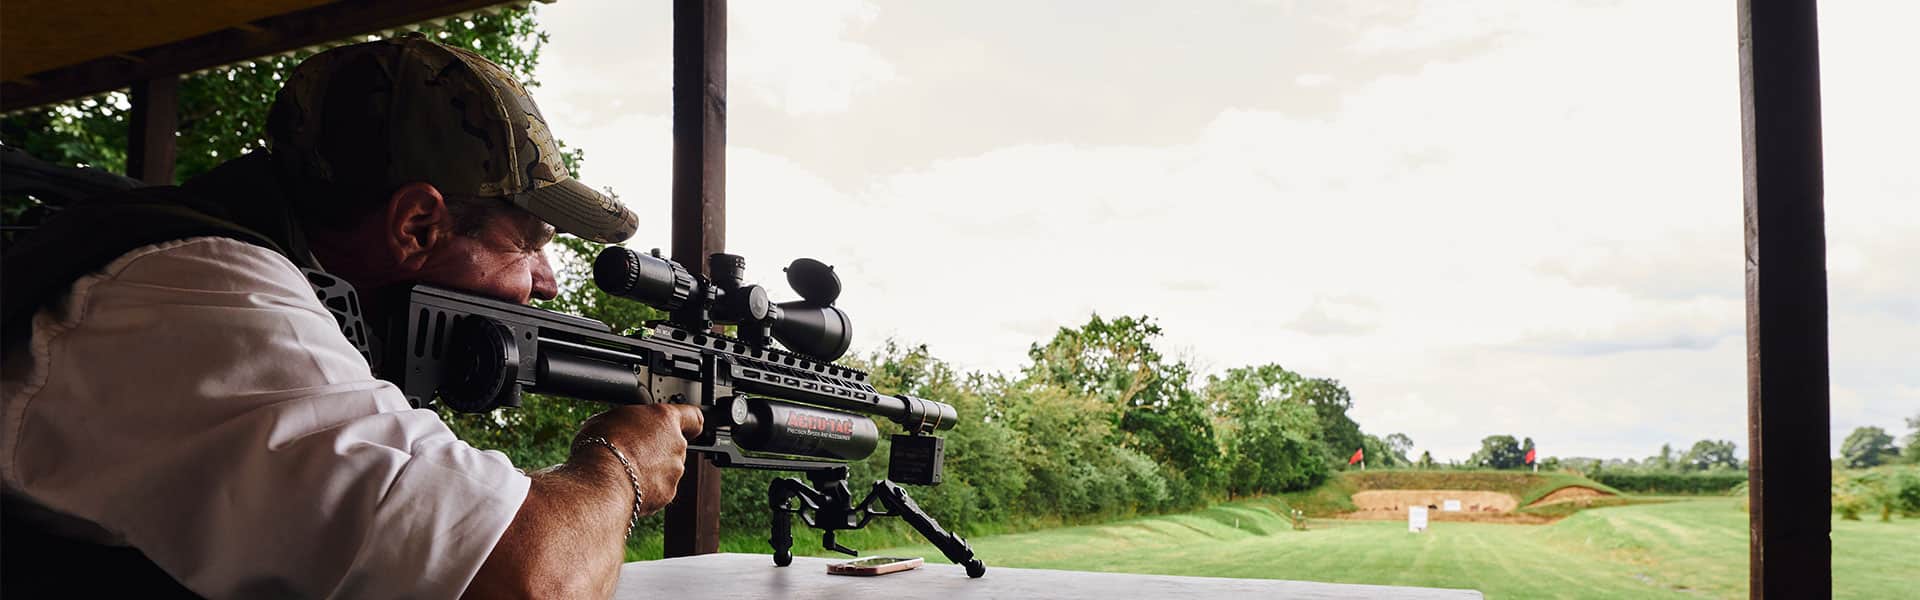 Air rifle shooter aiming down a range